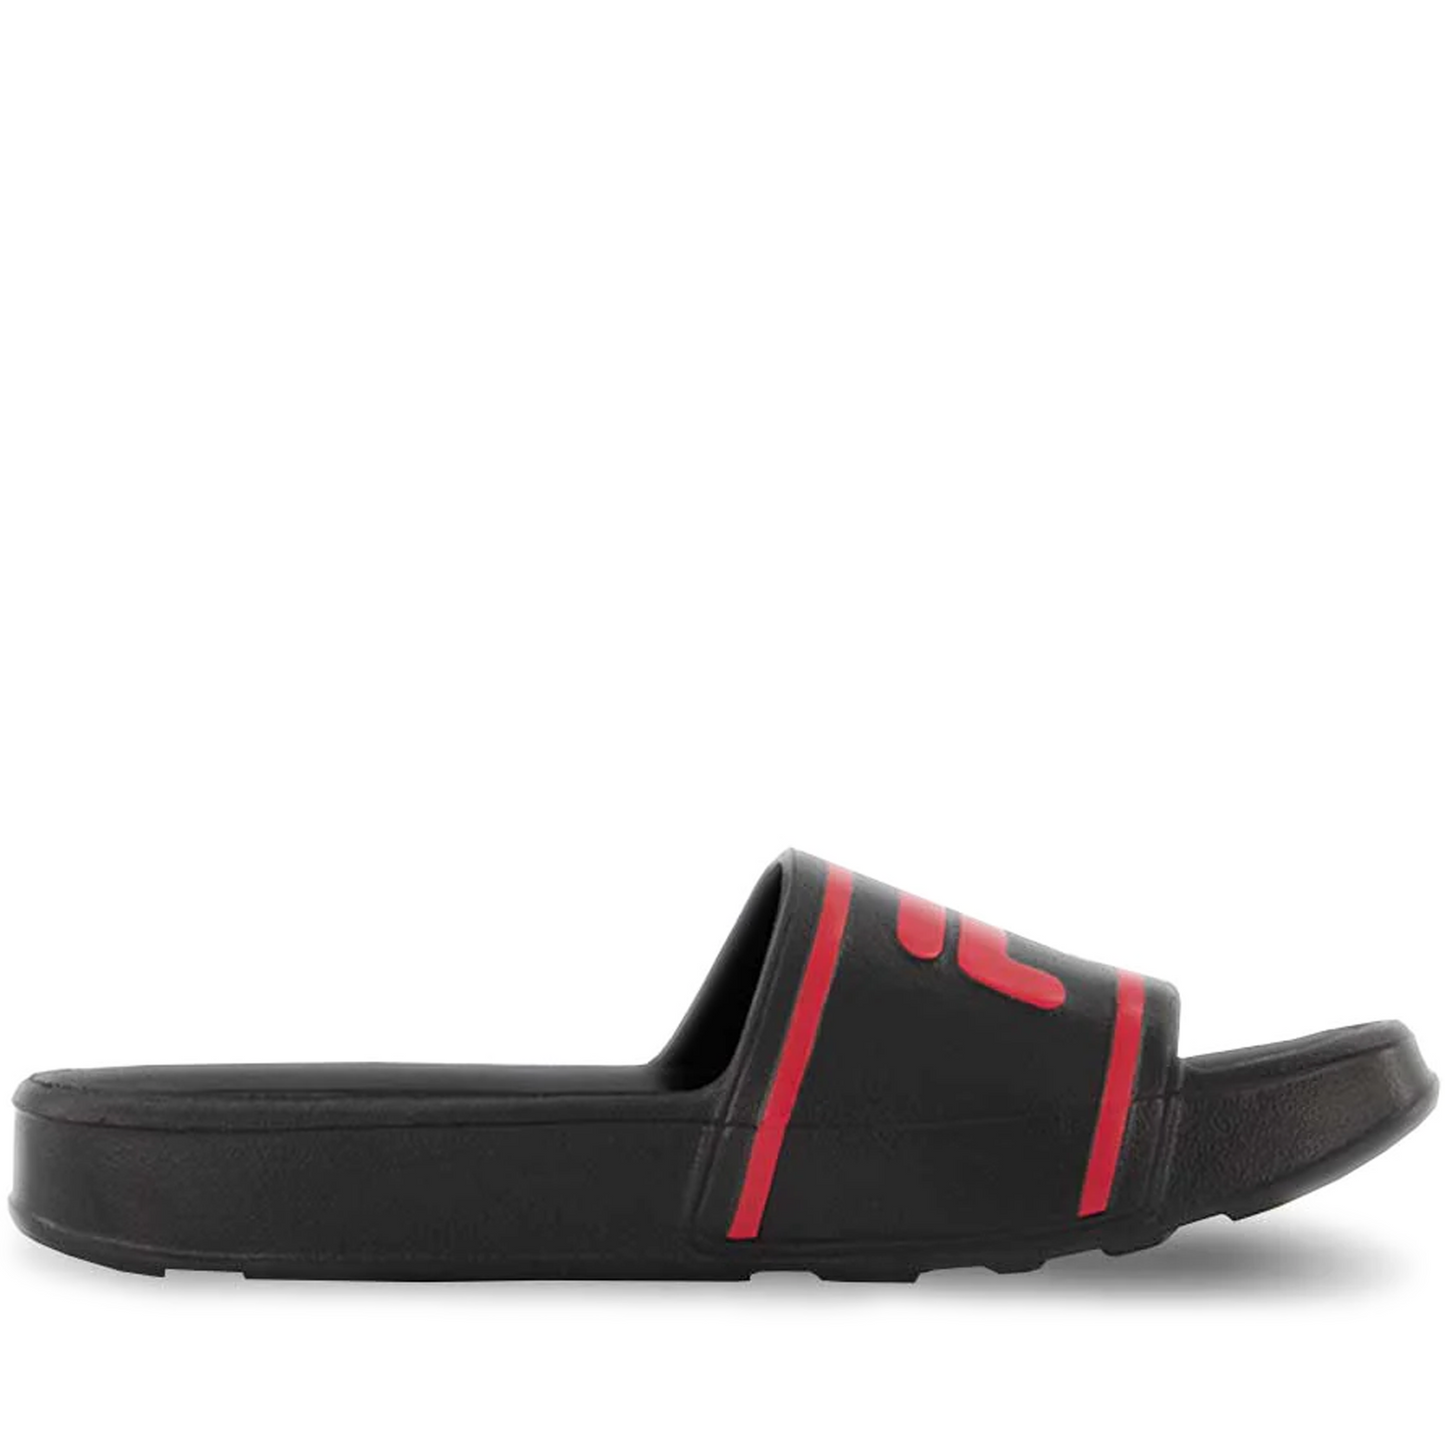 Men's Fila Sleek Slide ST - Black/ Red